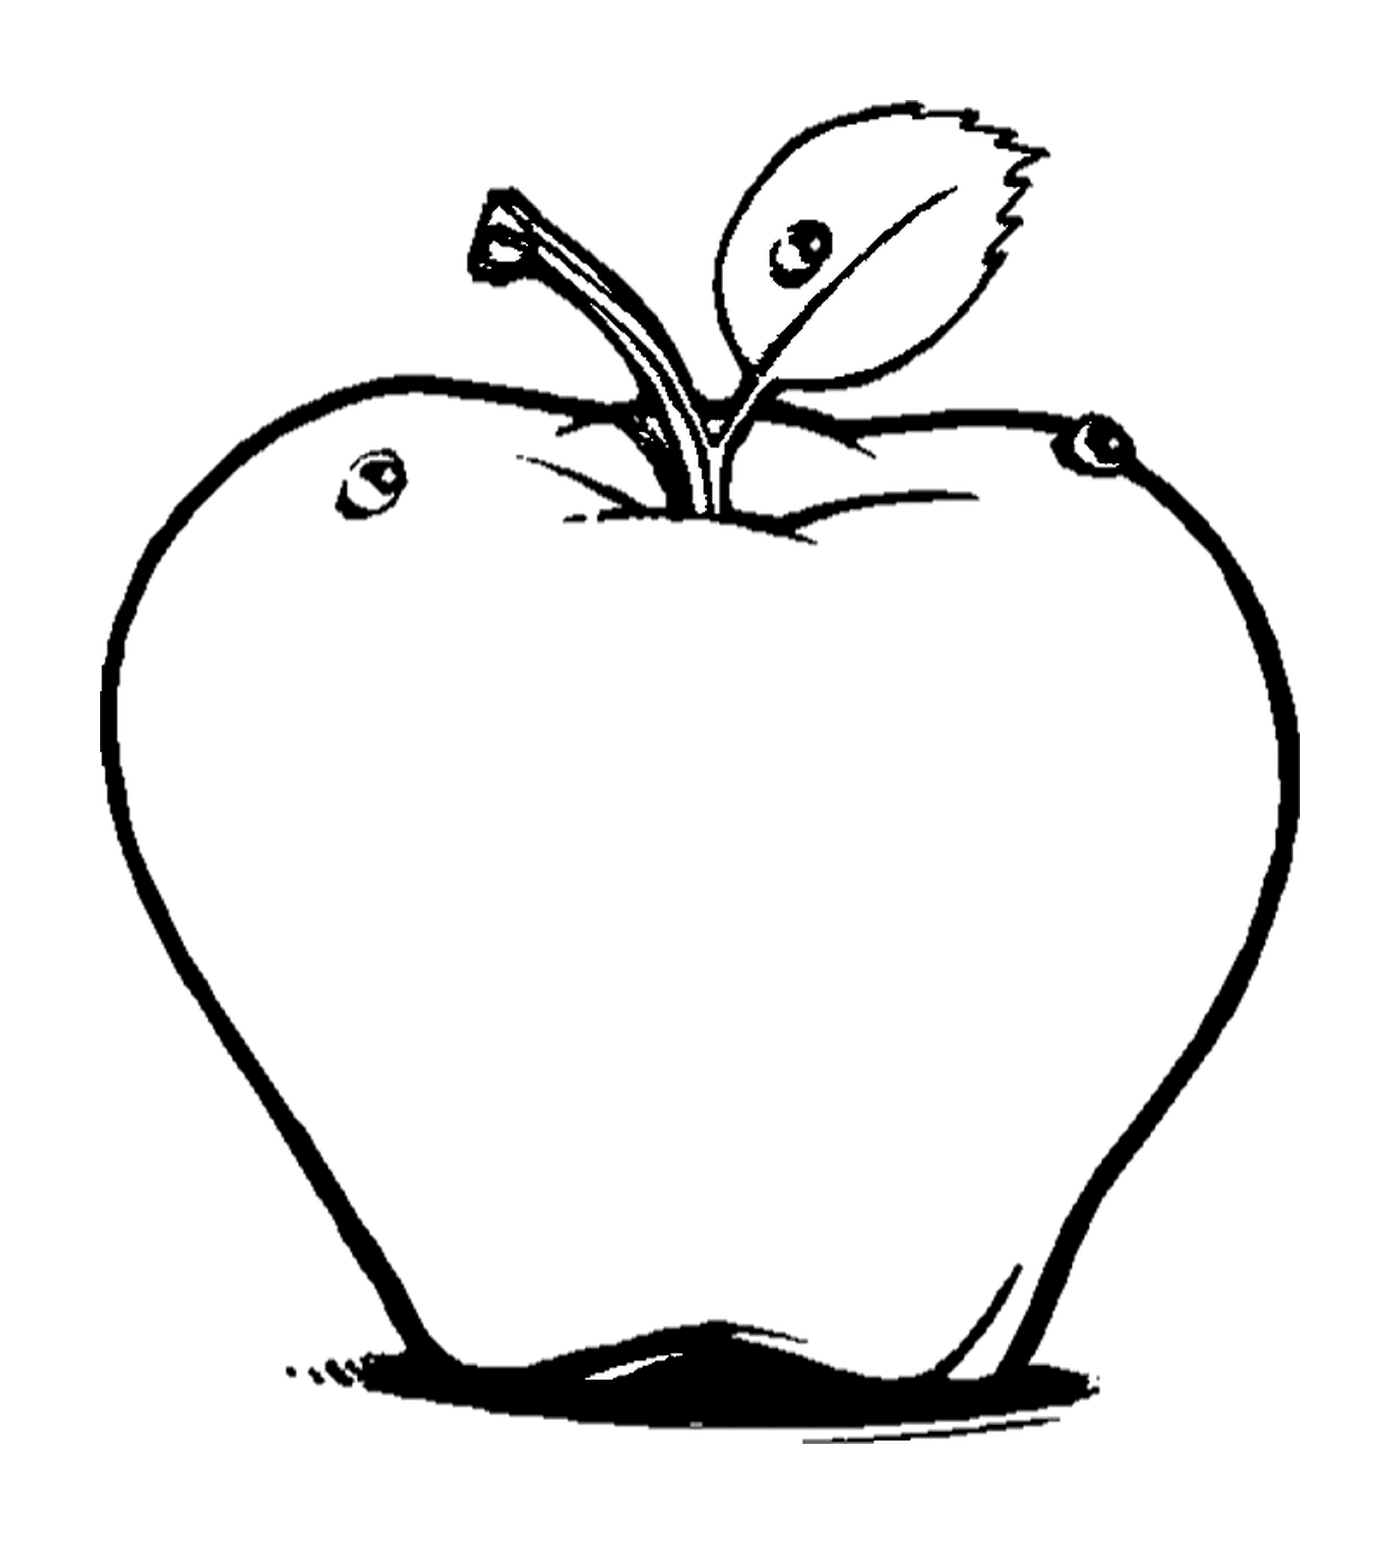  苹果绘图 